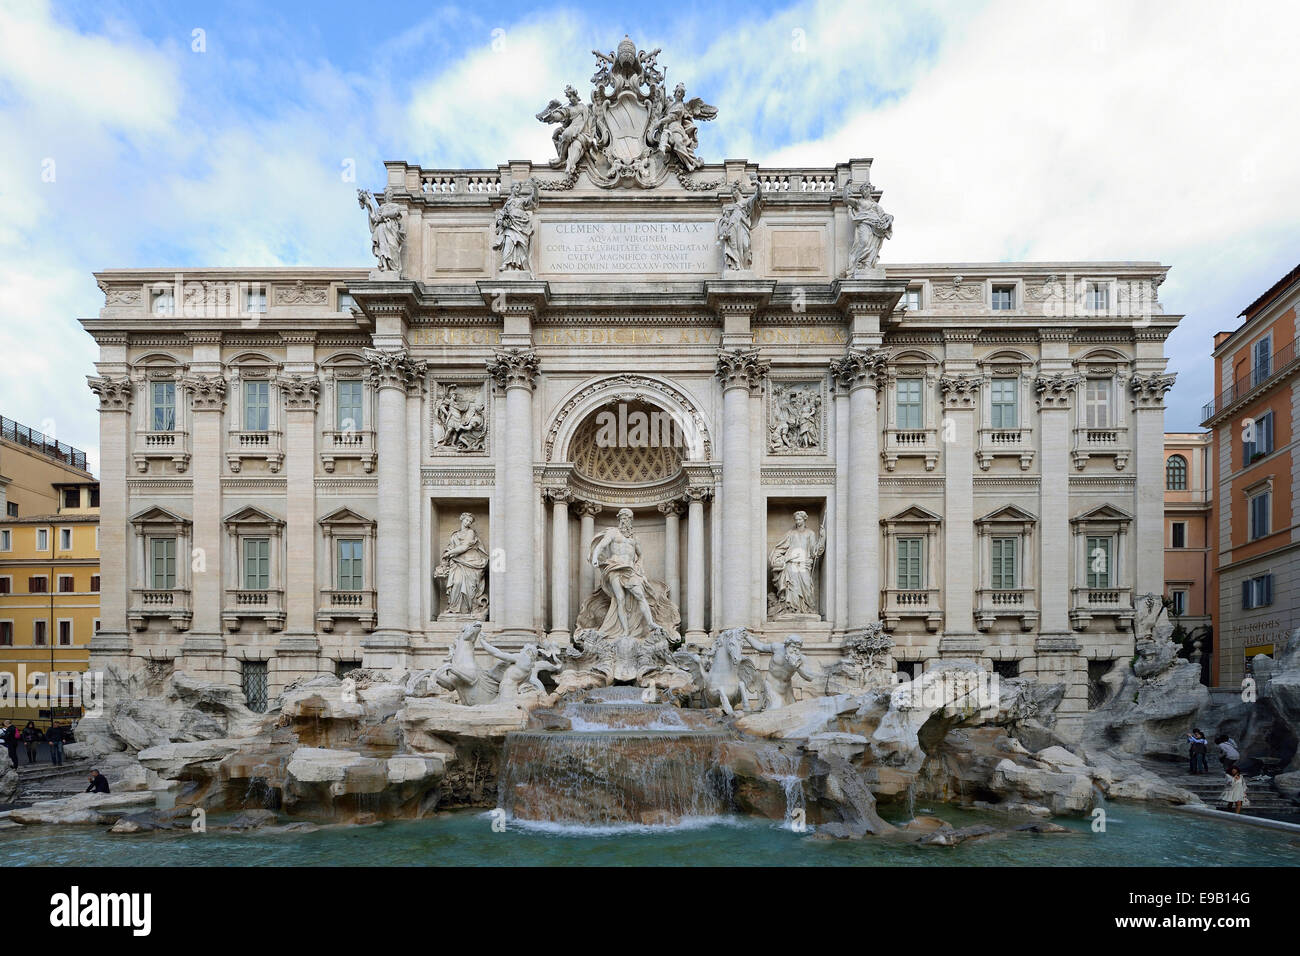 La fontana de Trevi, Roma, Italia Foto de stock